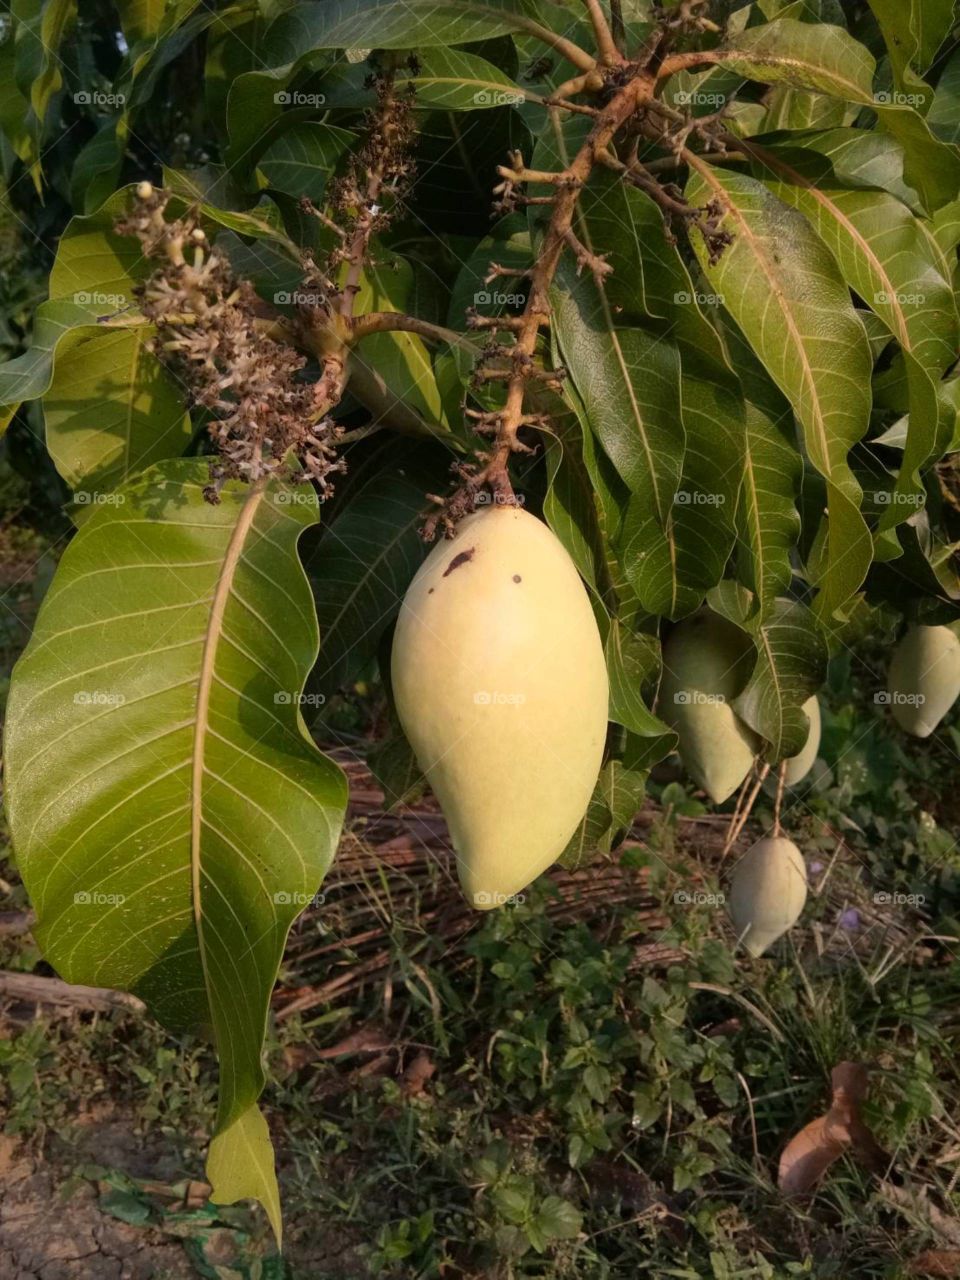 mango
food
fruit
good
green
nature